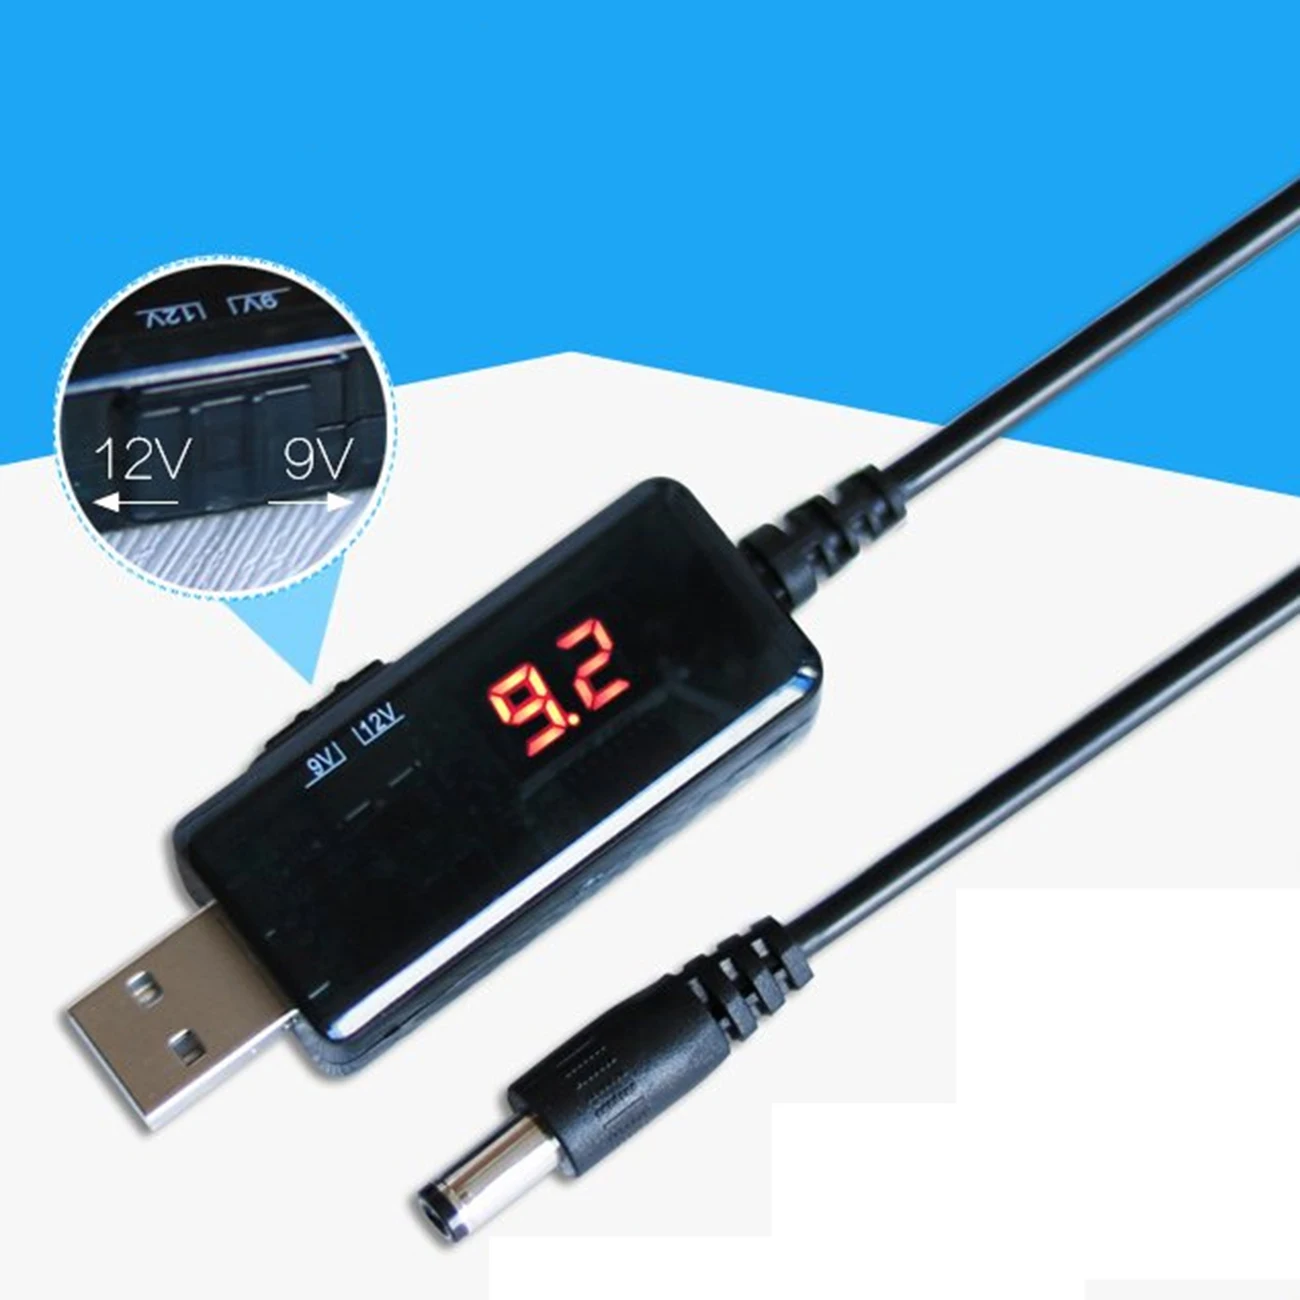 USB 昇圧コンバータ DC 5V 9V 12V USB ステップアップコンバータにケーブル + 3.5 × 1.35  ミリメートルのコネクタ電源/充電器/電源コンバータ